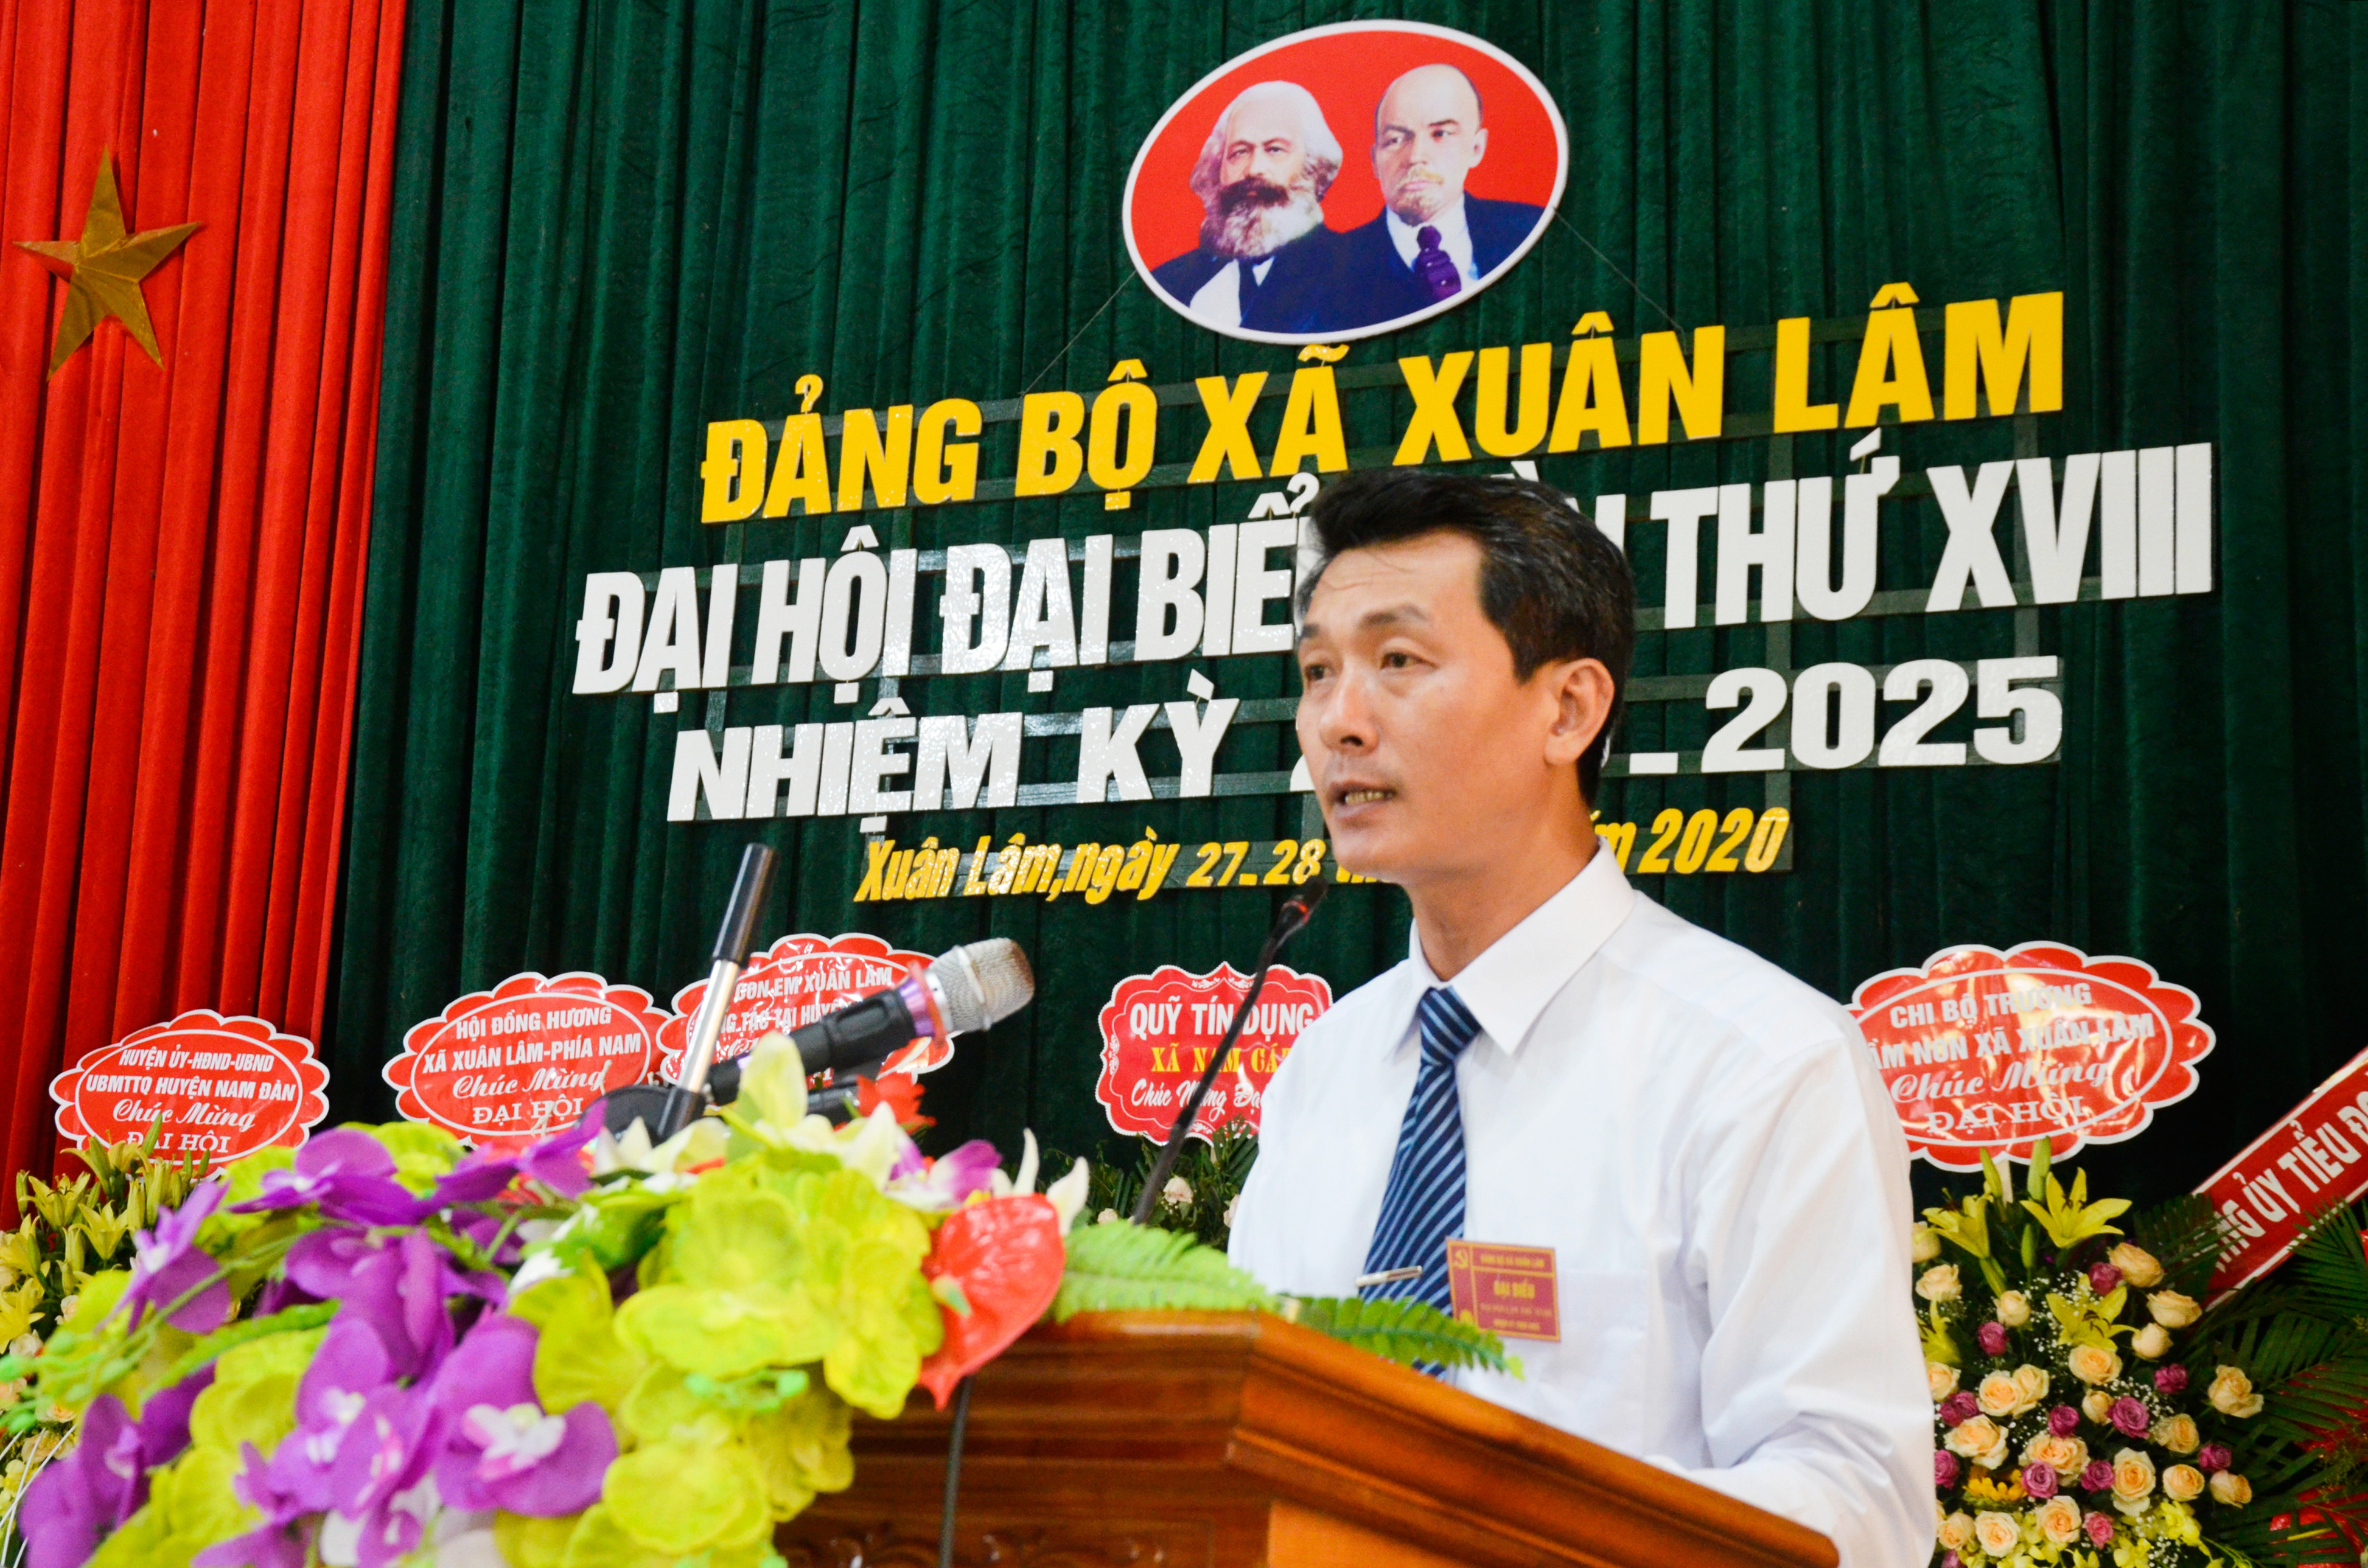 Bí thư Đảng ủy xã Xuân Lâm Nguyễn Duy Thảo trình bày báo cáo chính trị tại đại hội. Ảnh: Thanh Lê